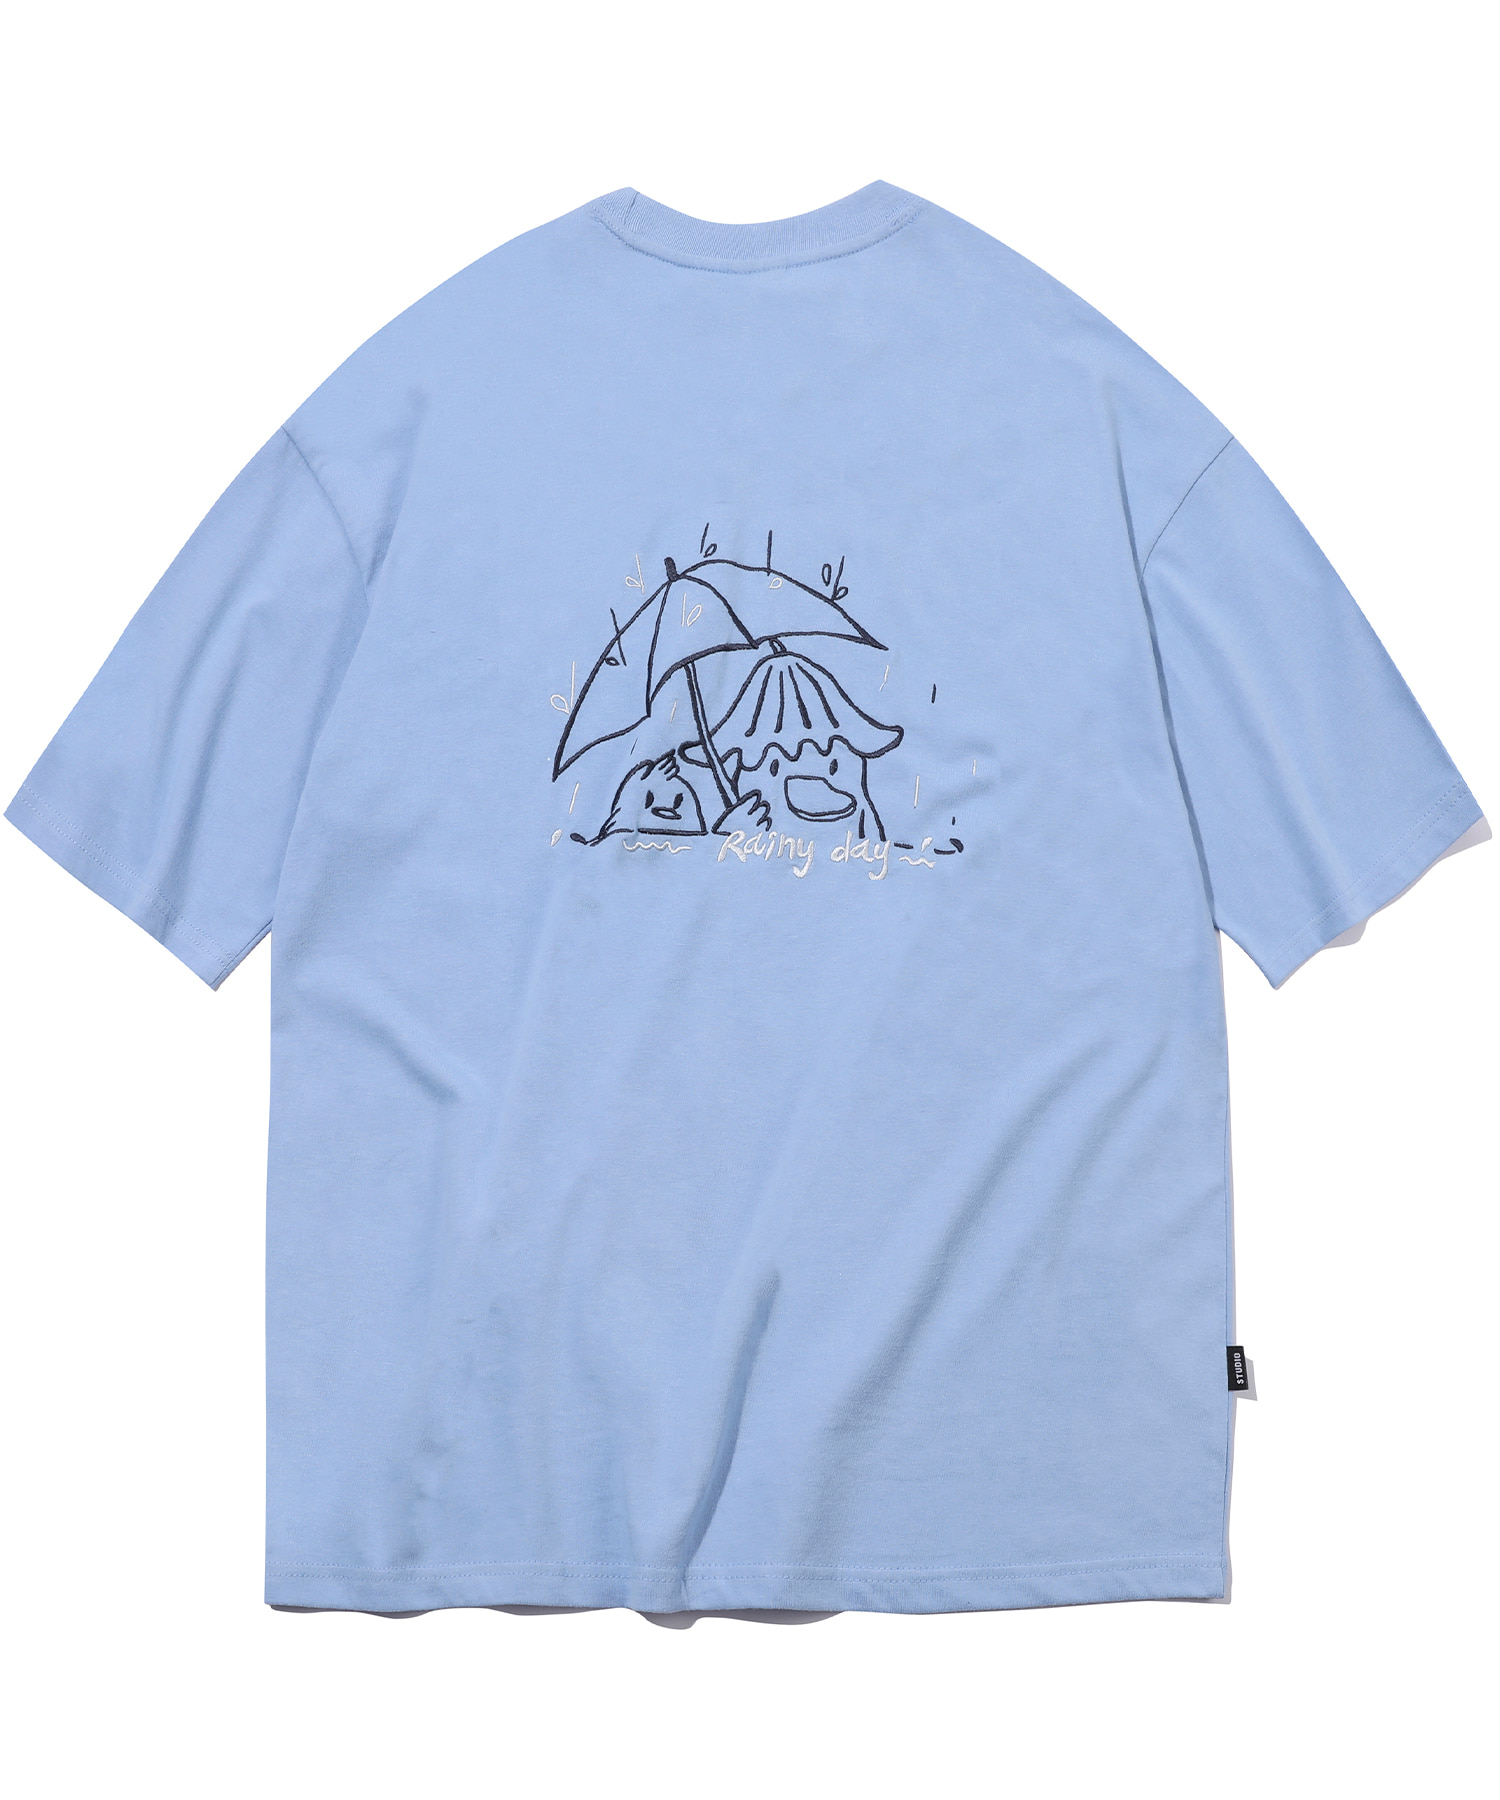 韓國CPGN STUDIO - Rainy Day Embroidery Short Sleeve T-shirt Fade Blue